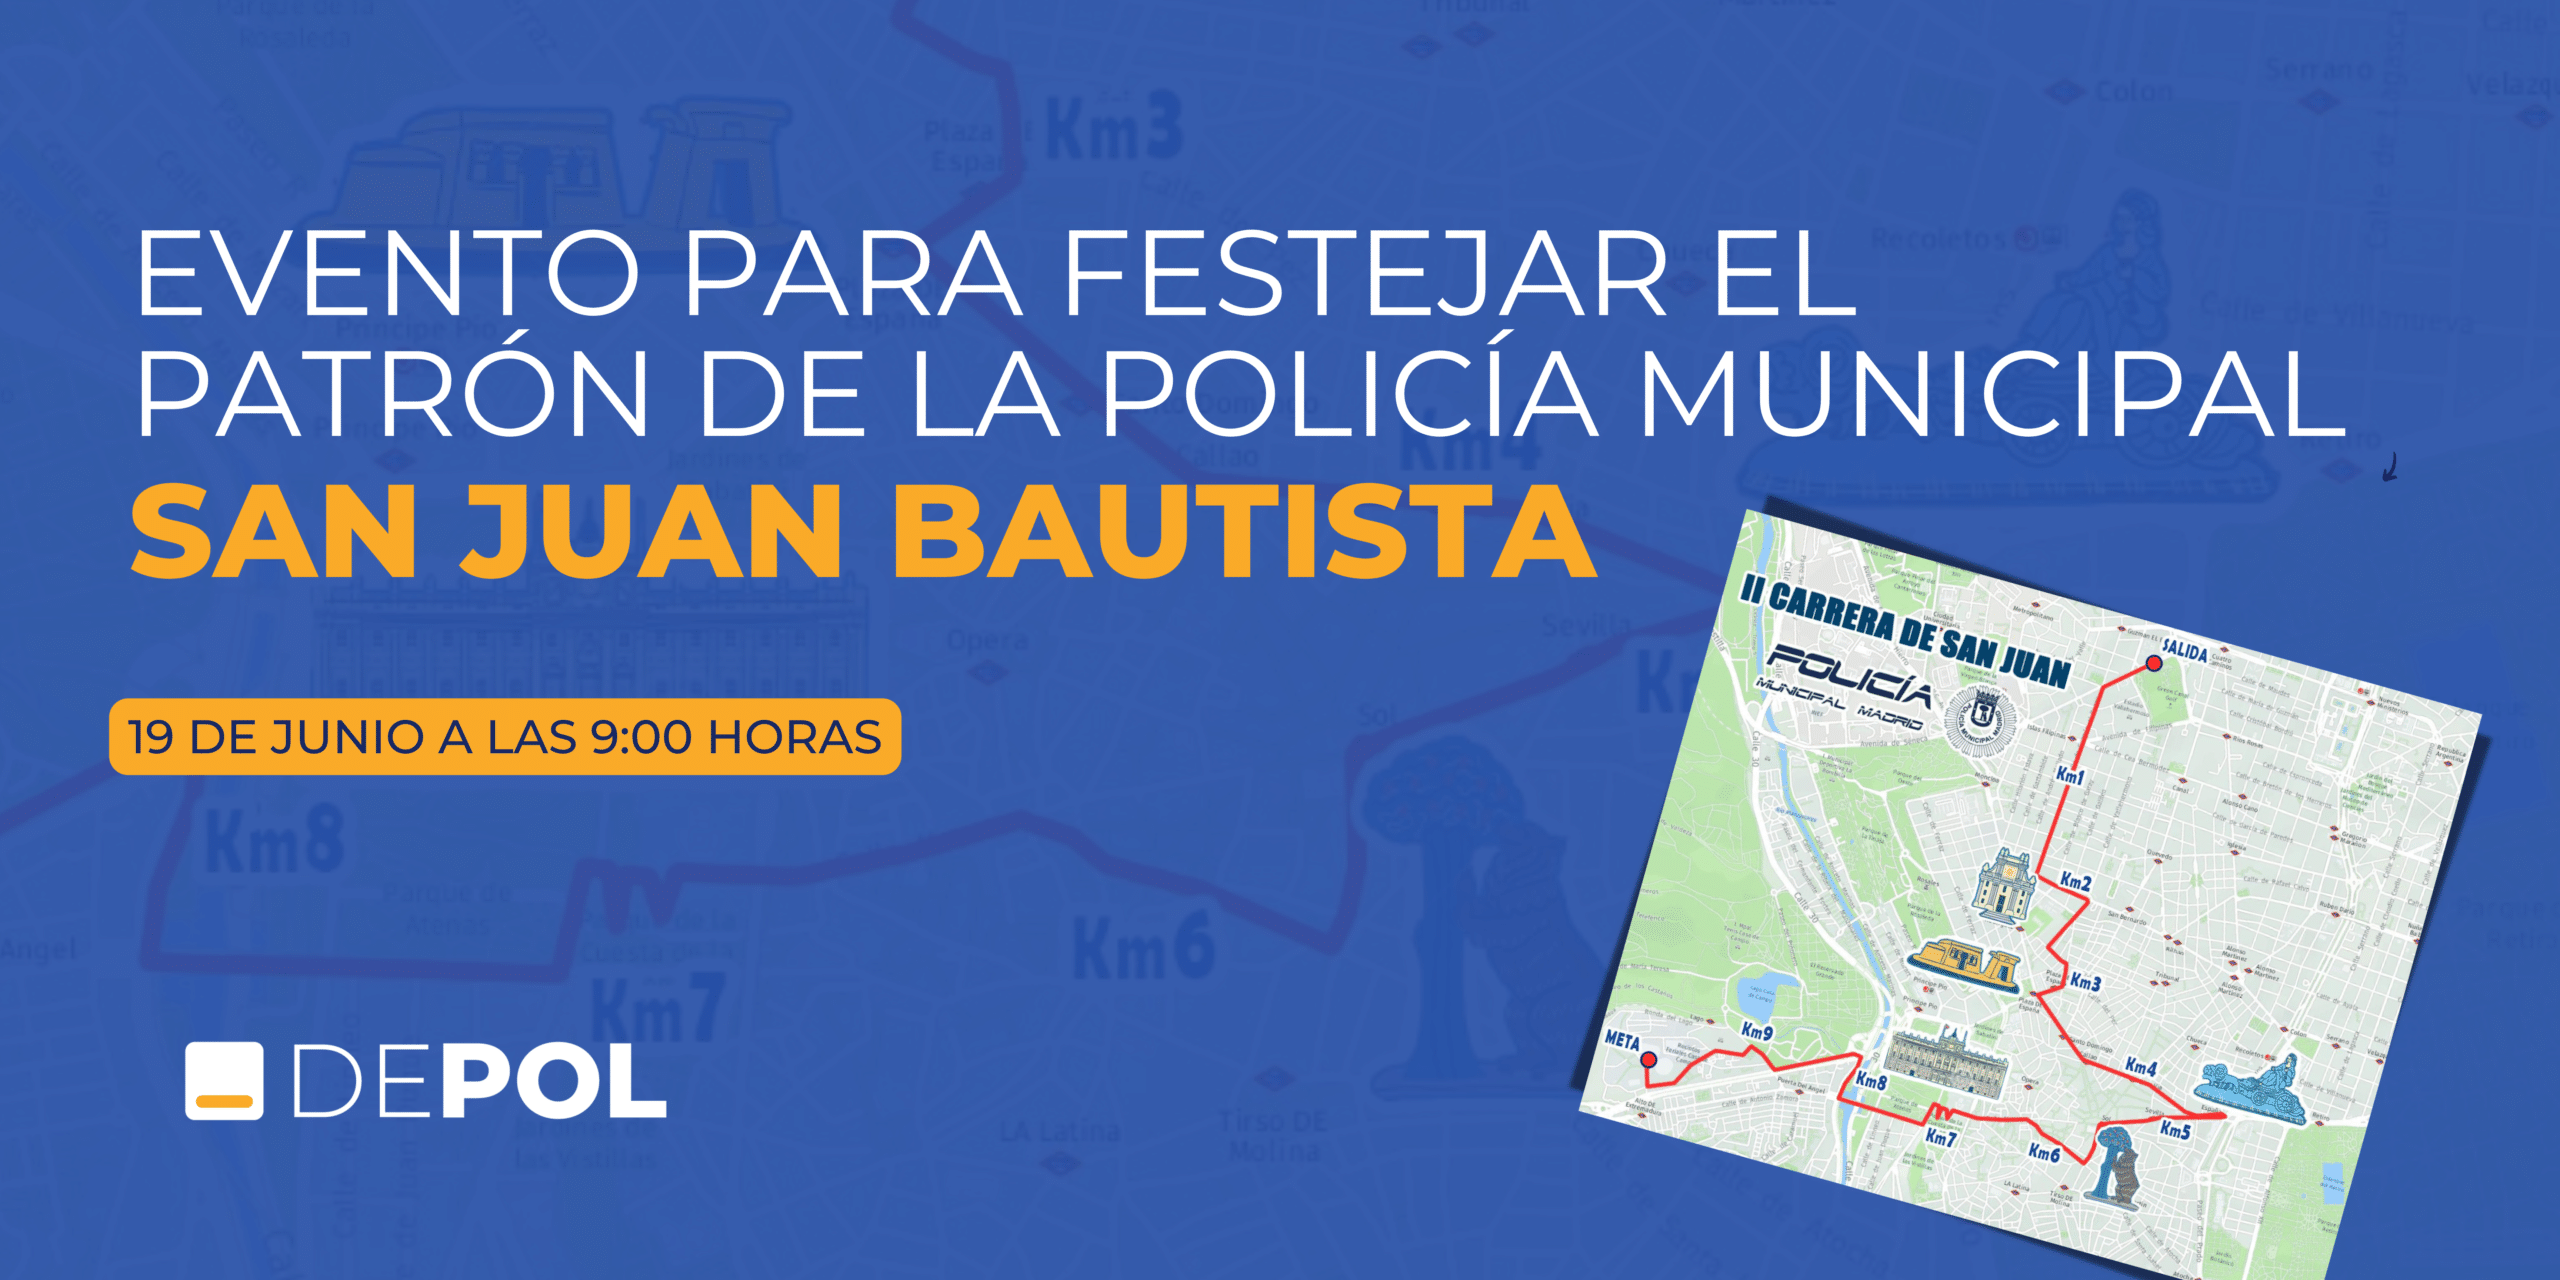 II Carrera de San Juan – Policía Municipal